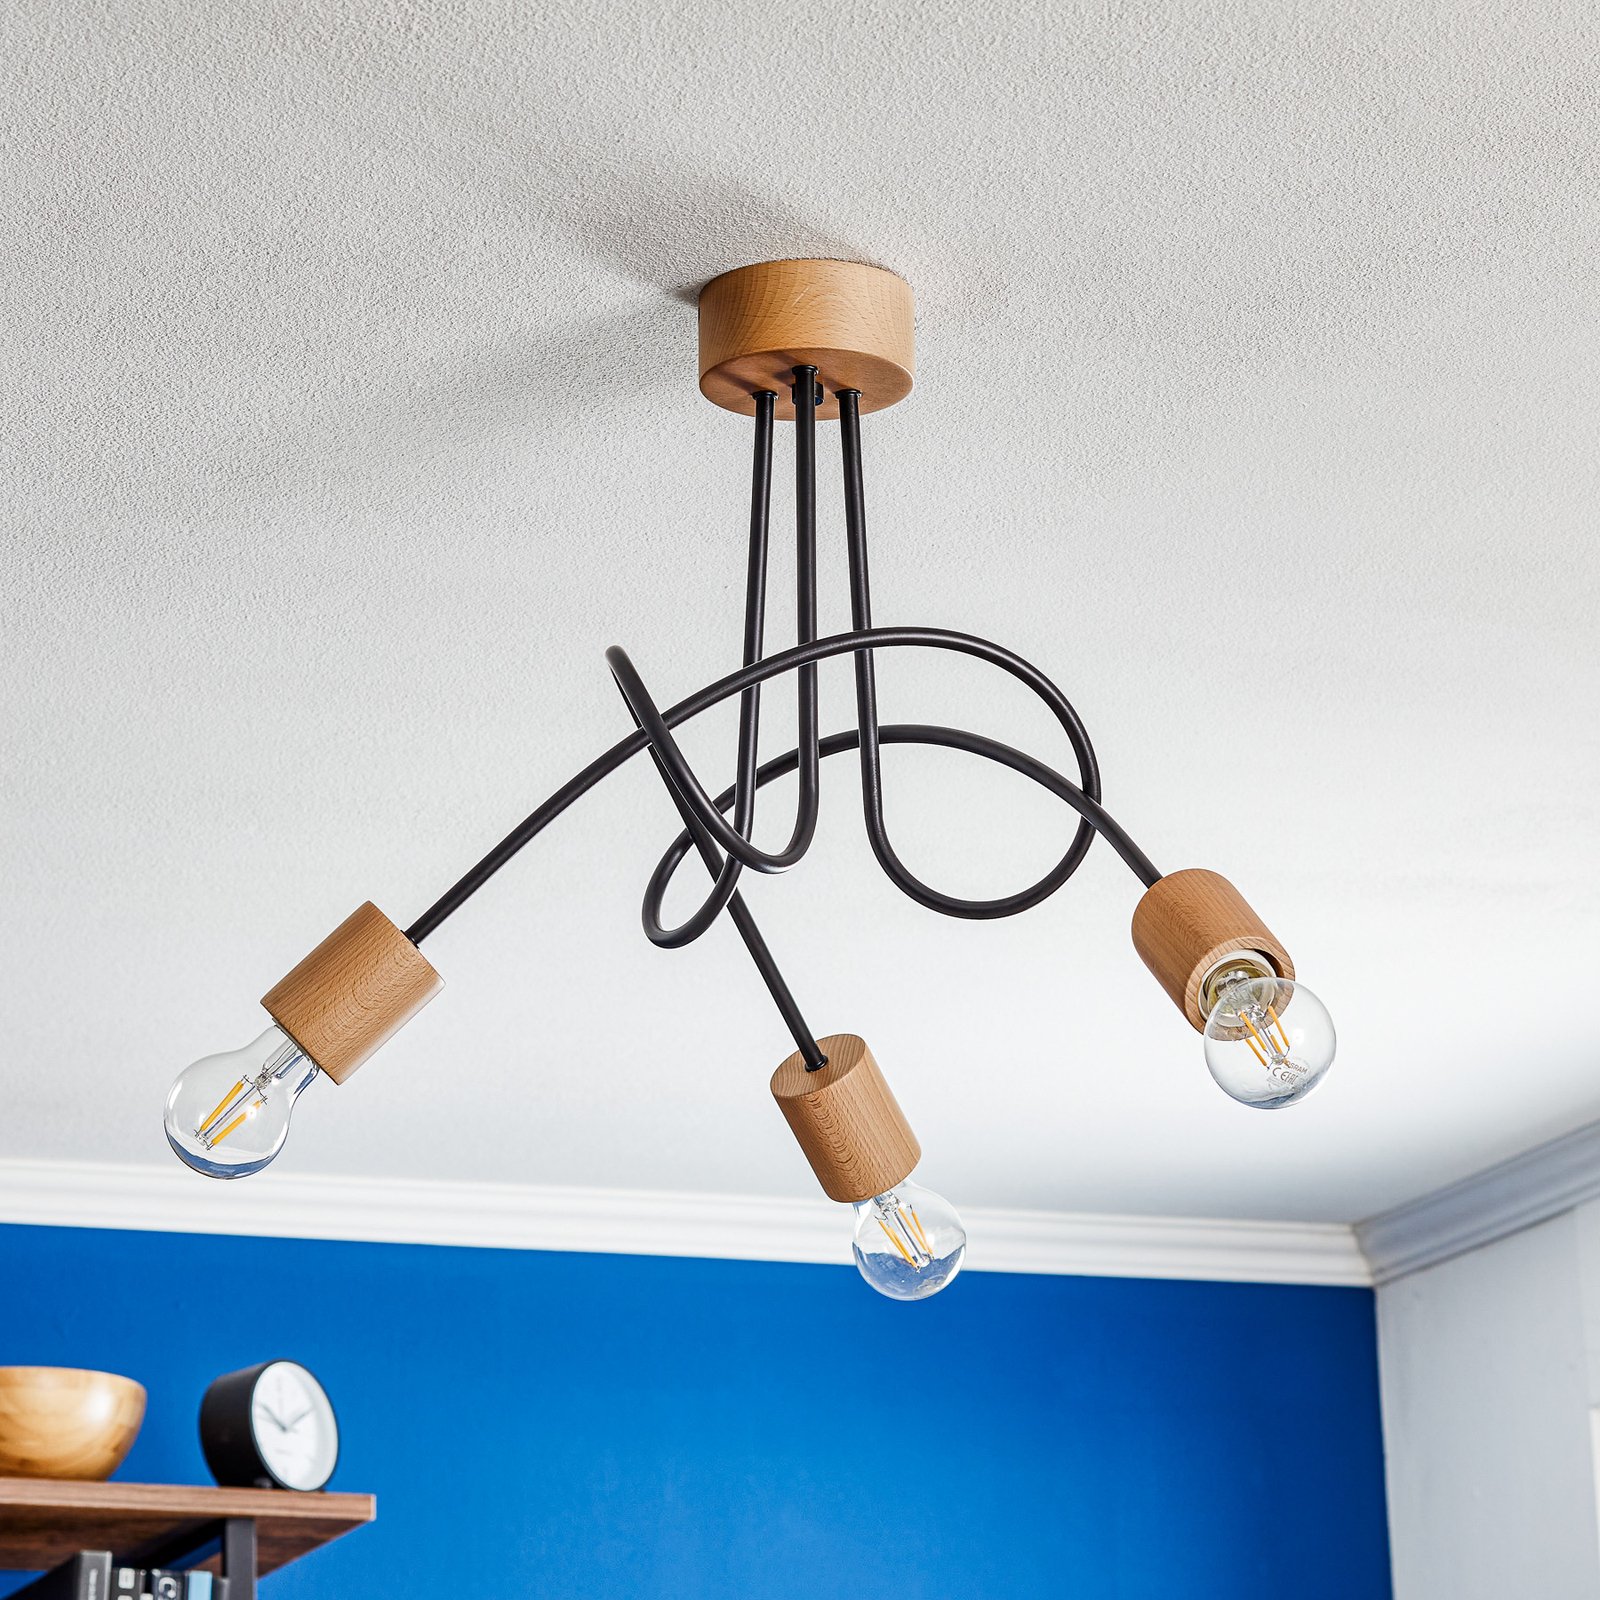 Tarnow ceiling light three-bulb, wood